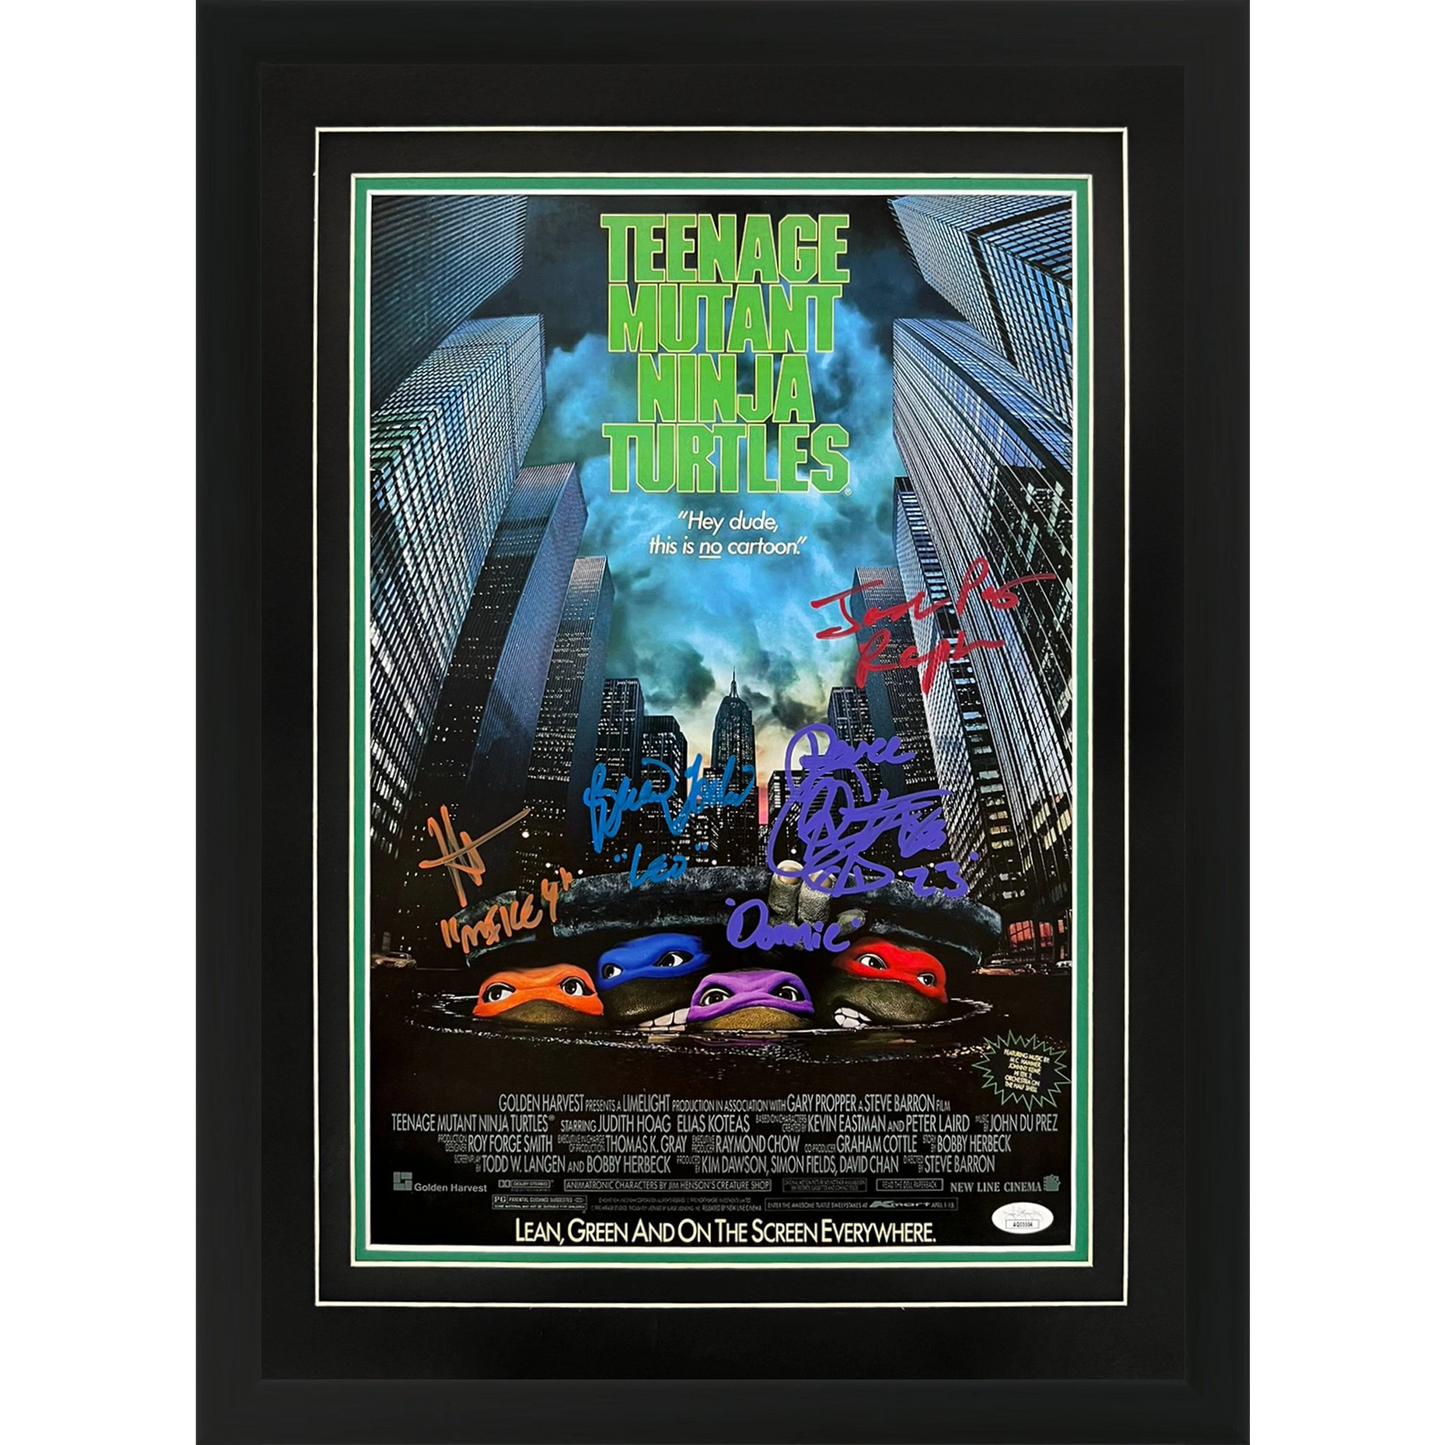 Teenage Mutant Ninja Turtles Movie Cast Autographed 12x18 Deluxe Framed Movie Poster 4 signatures - JSA